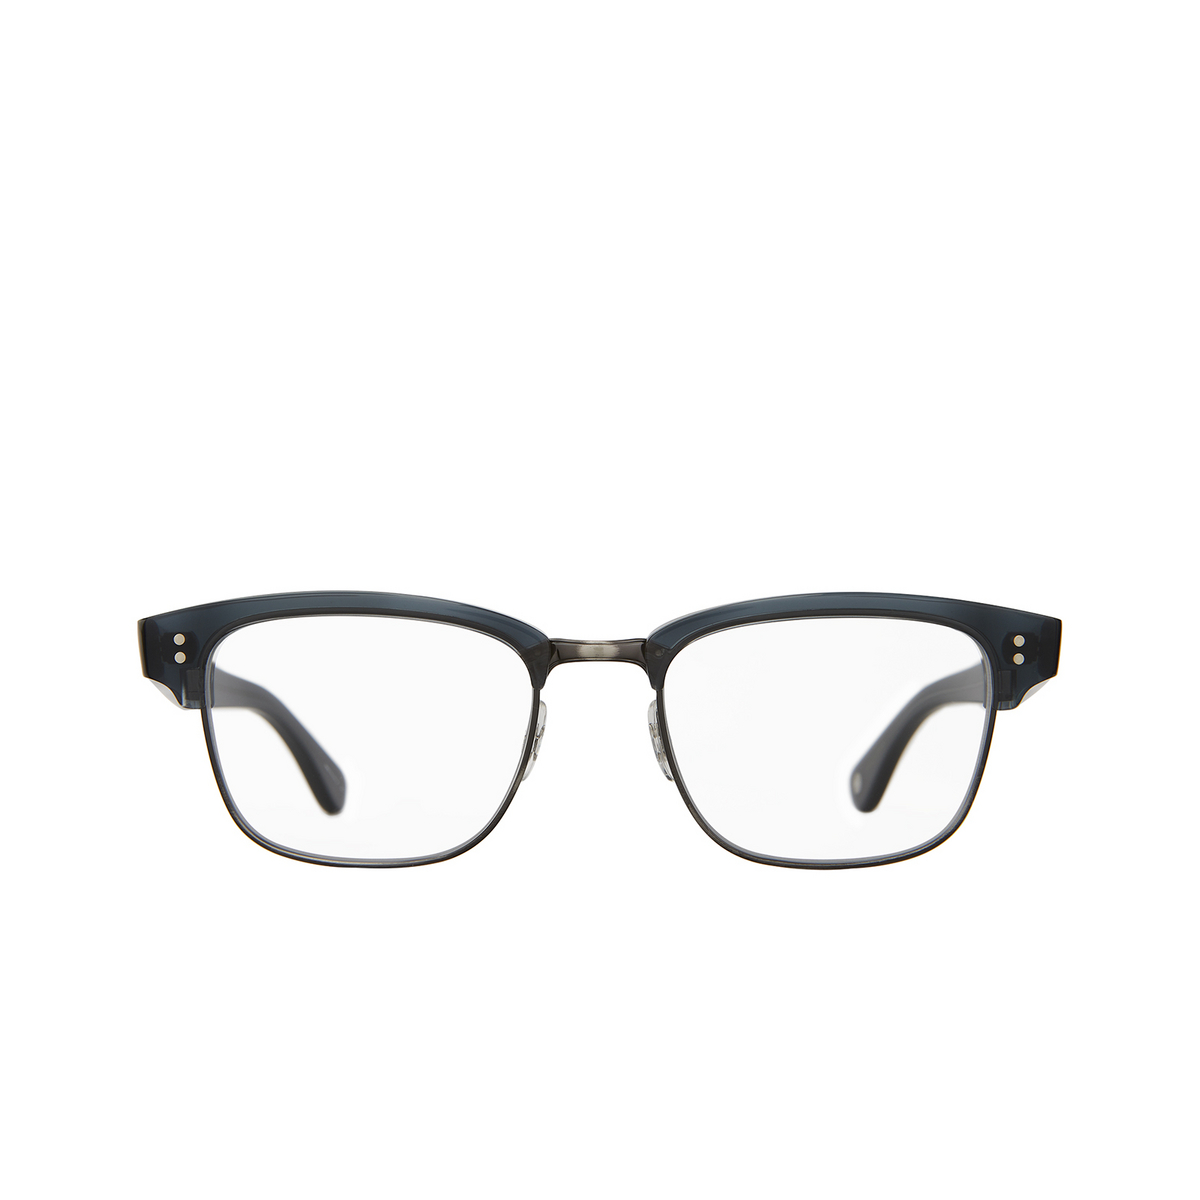 Garrett Leight GIBSON Eyeglasses NVY-PW Navy - Pewter - 1/3